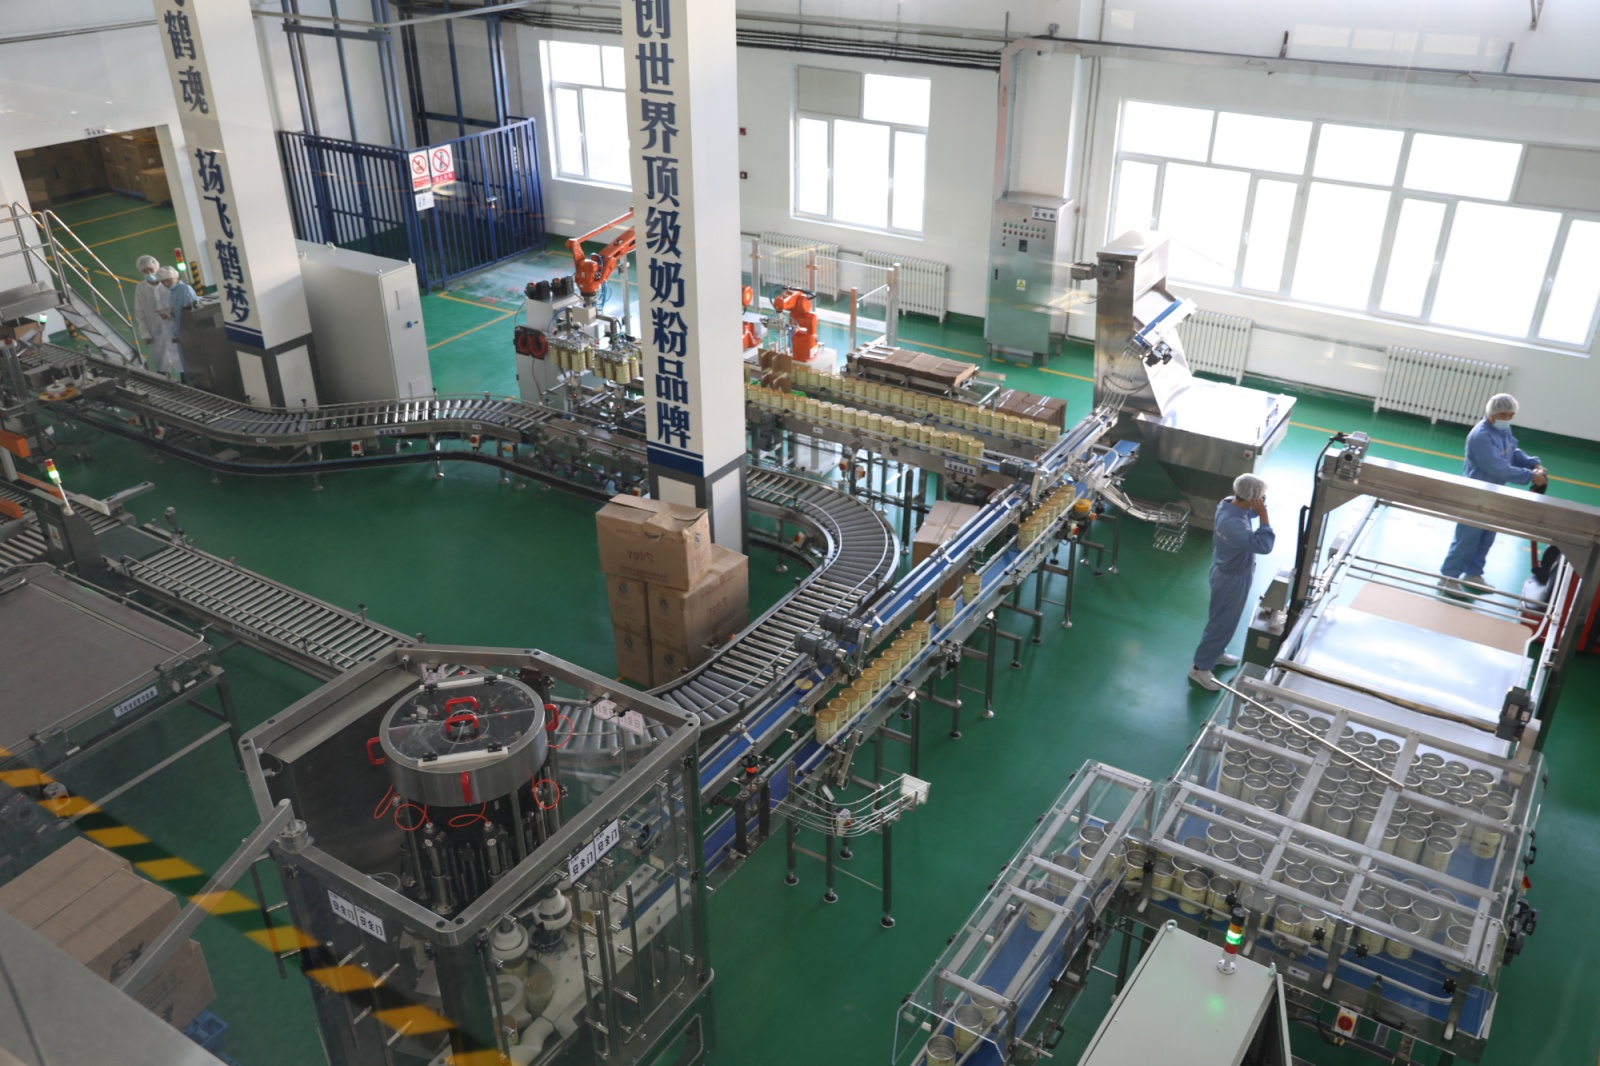 拜泉县尚禾谷营养食品有限公司升级改造后的奶粉生产线.